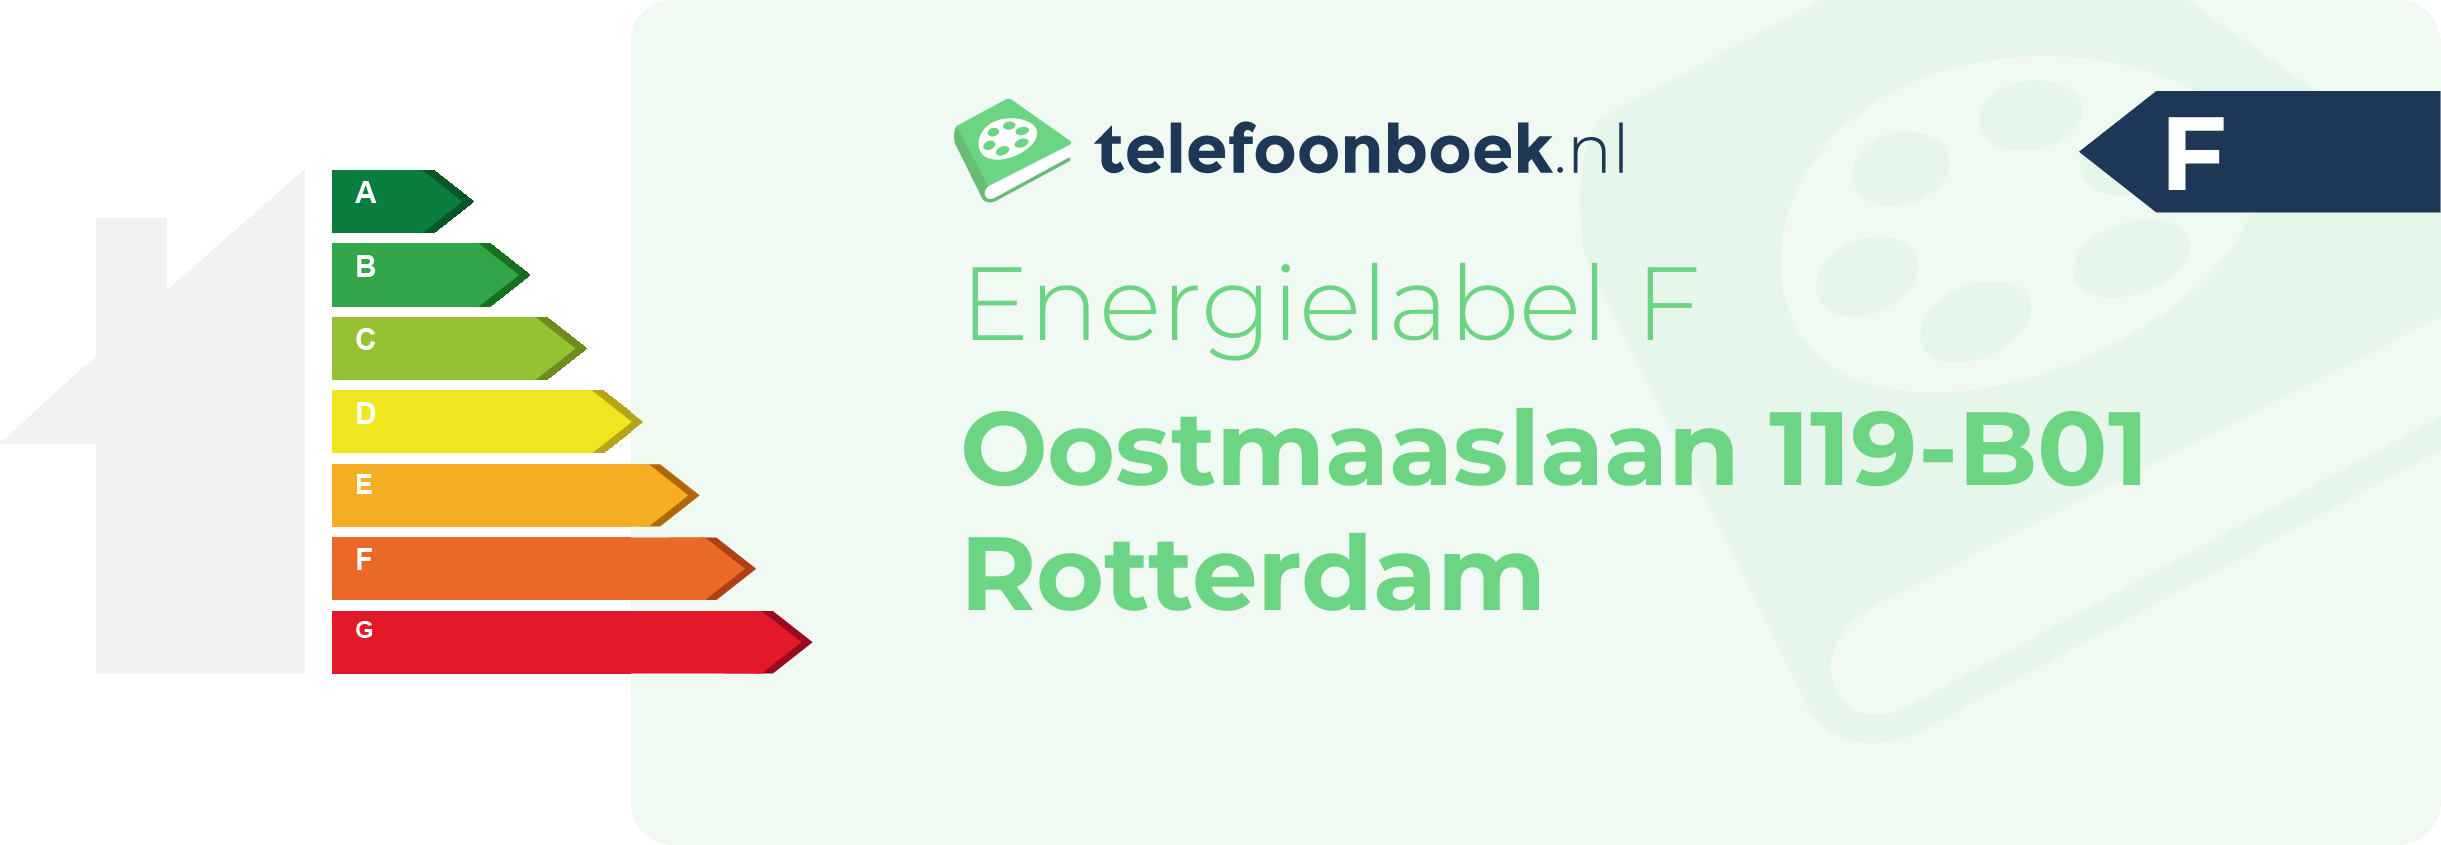 Energielabel Oostmaaslaan 119-B01 Rotterdam